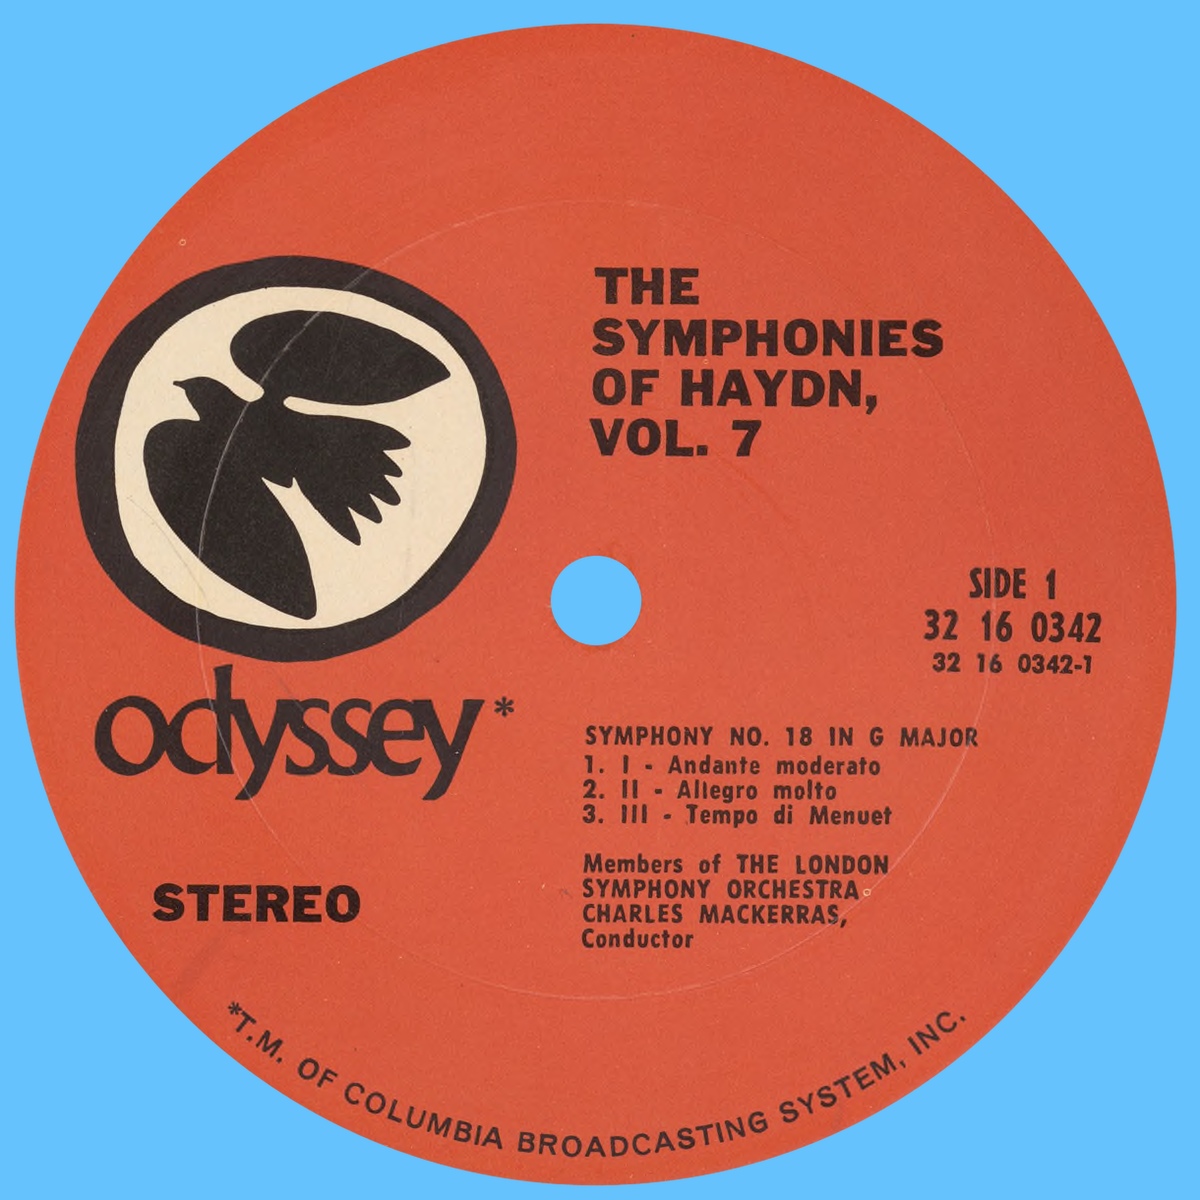 Étiquette recto du disque Columbia Odyssey 32 16 0342